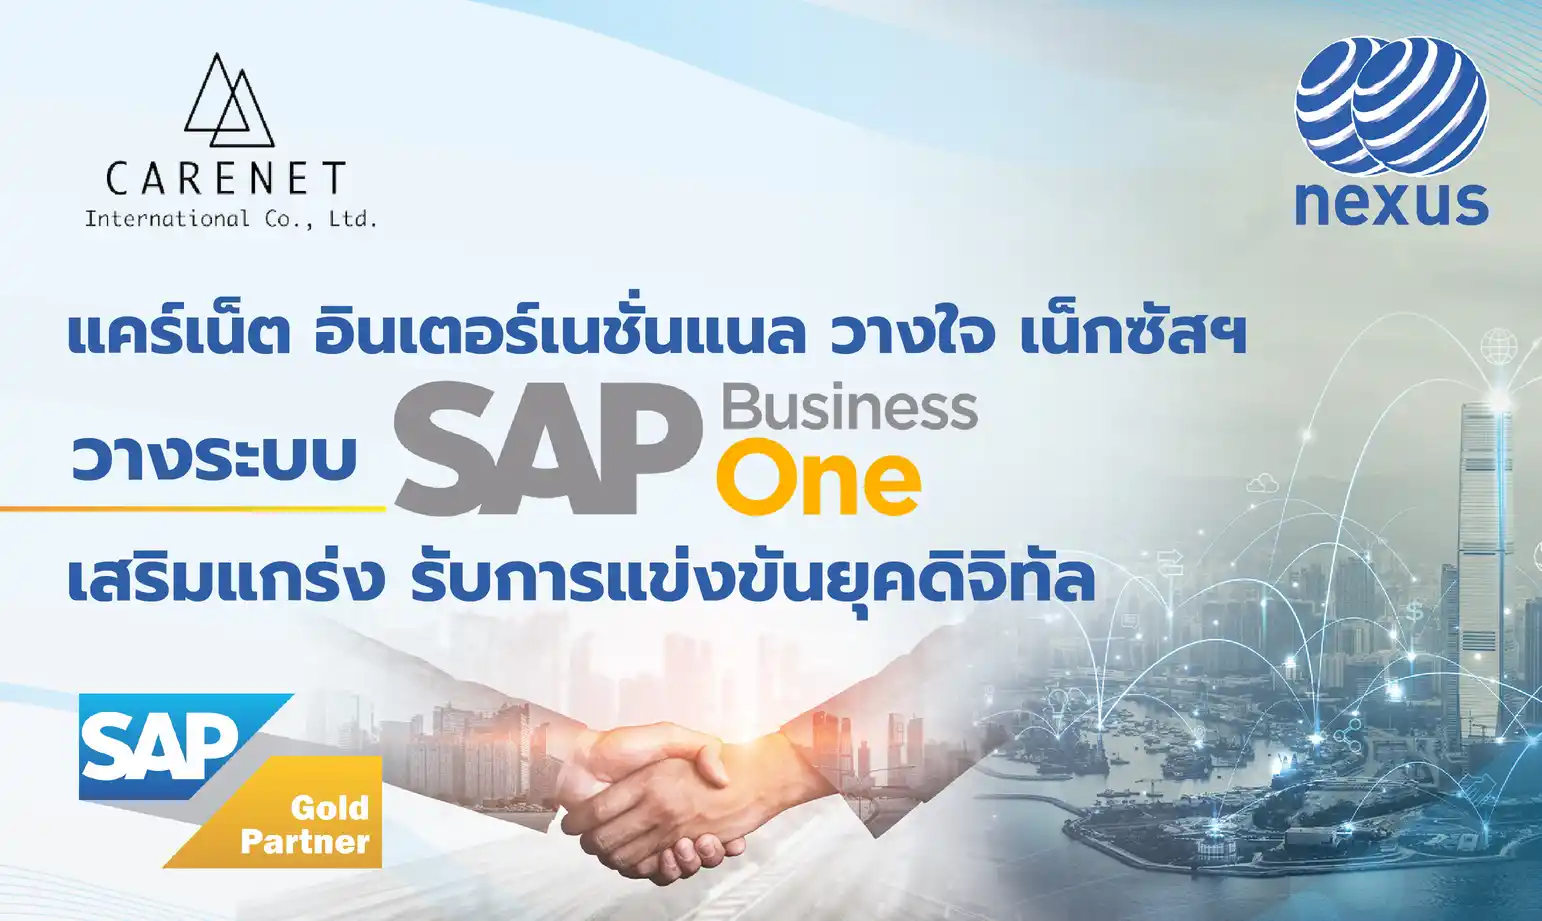 แคร์เน็ต อินเตอร์เนชั่นแนล วางใจ เน็กซัสฯ วางระบบ SAP Business One เสริมแกร่ง รับการแข่งขันยุคดิจิทัล